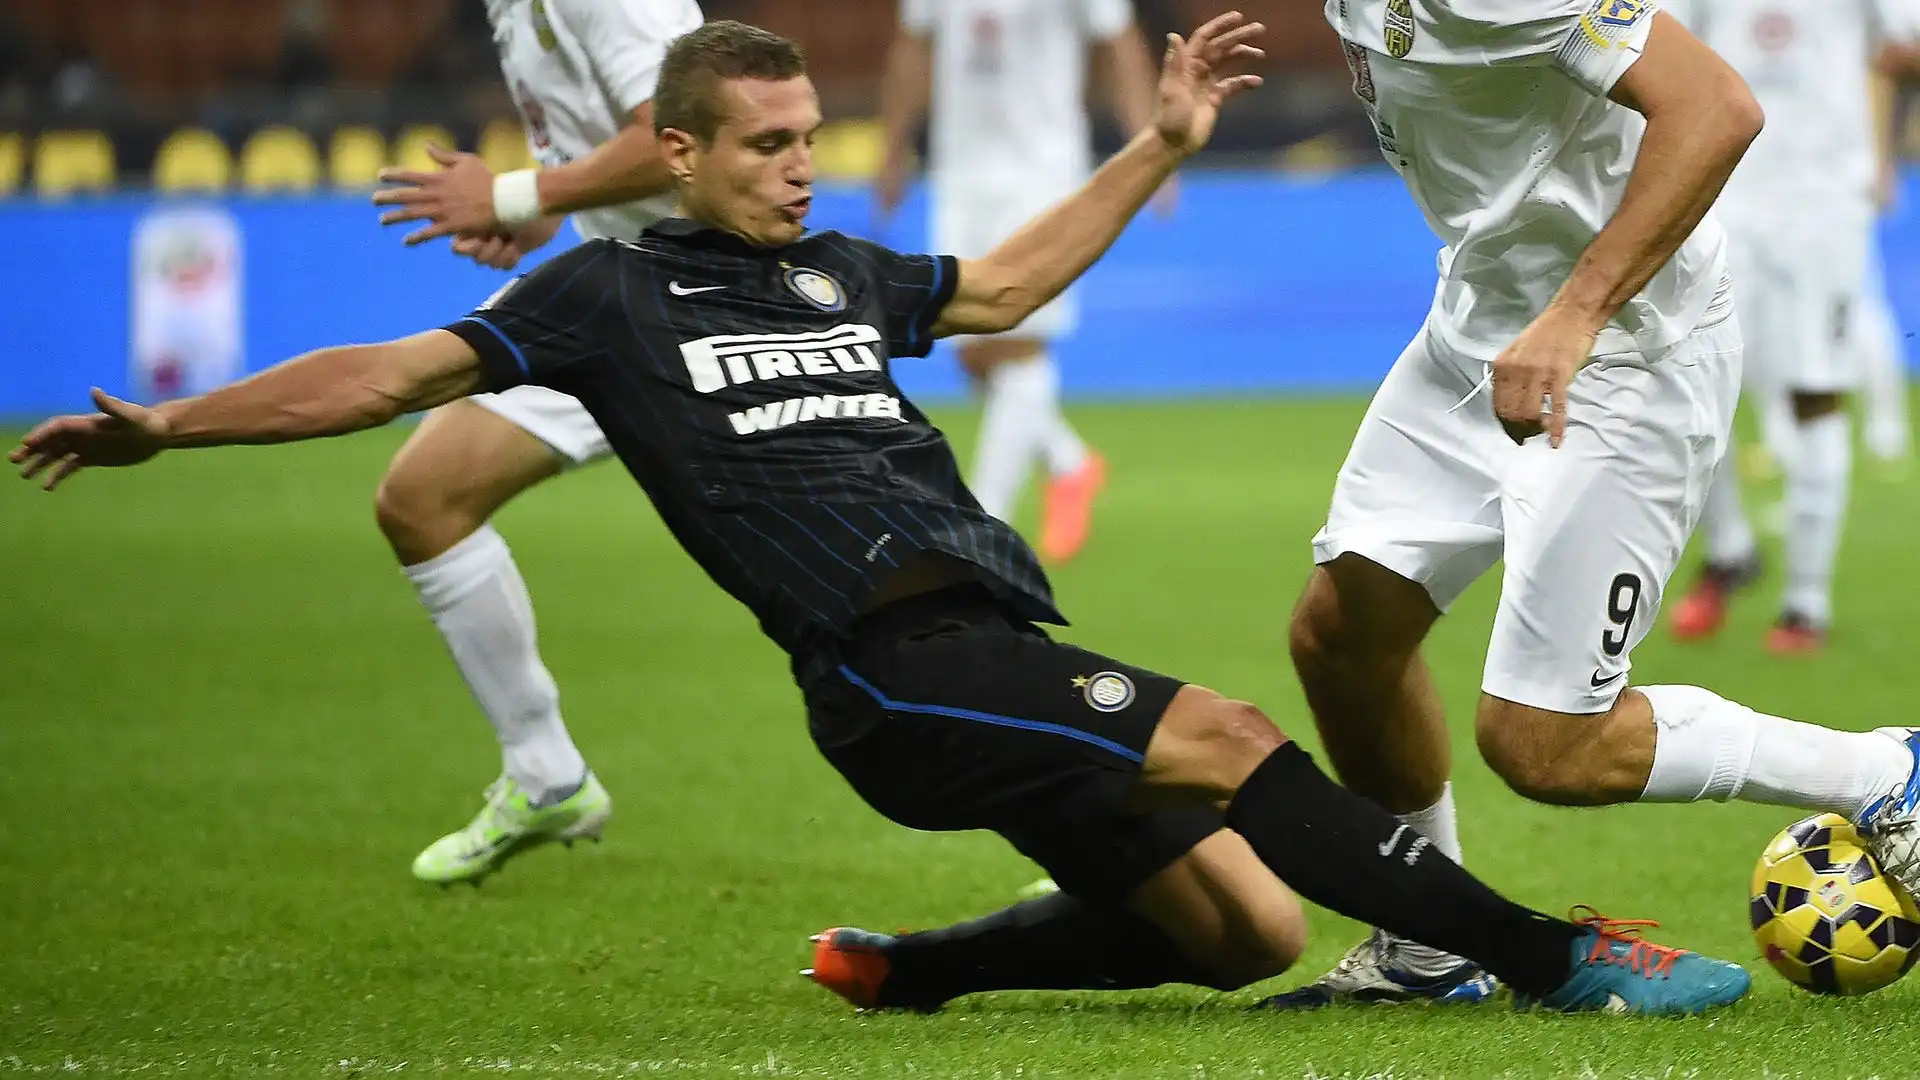 Concluse la sua esperienza all'Inter con appena 27 presenze e 1 gol segnato